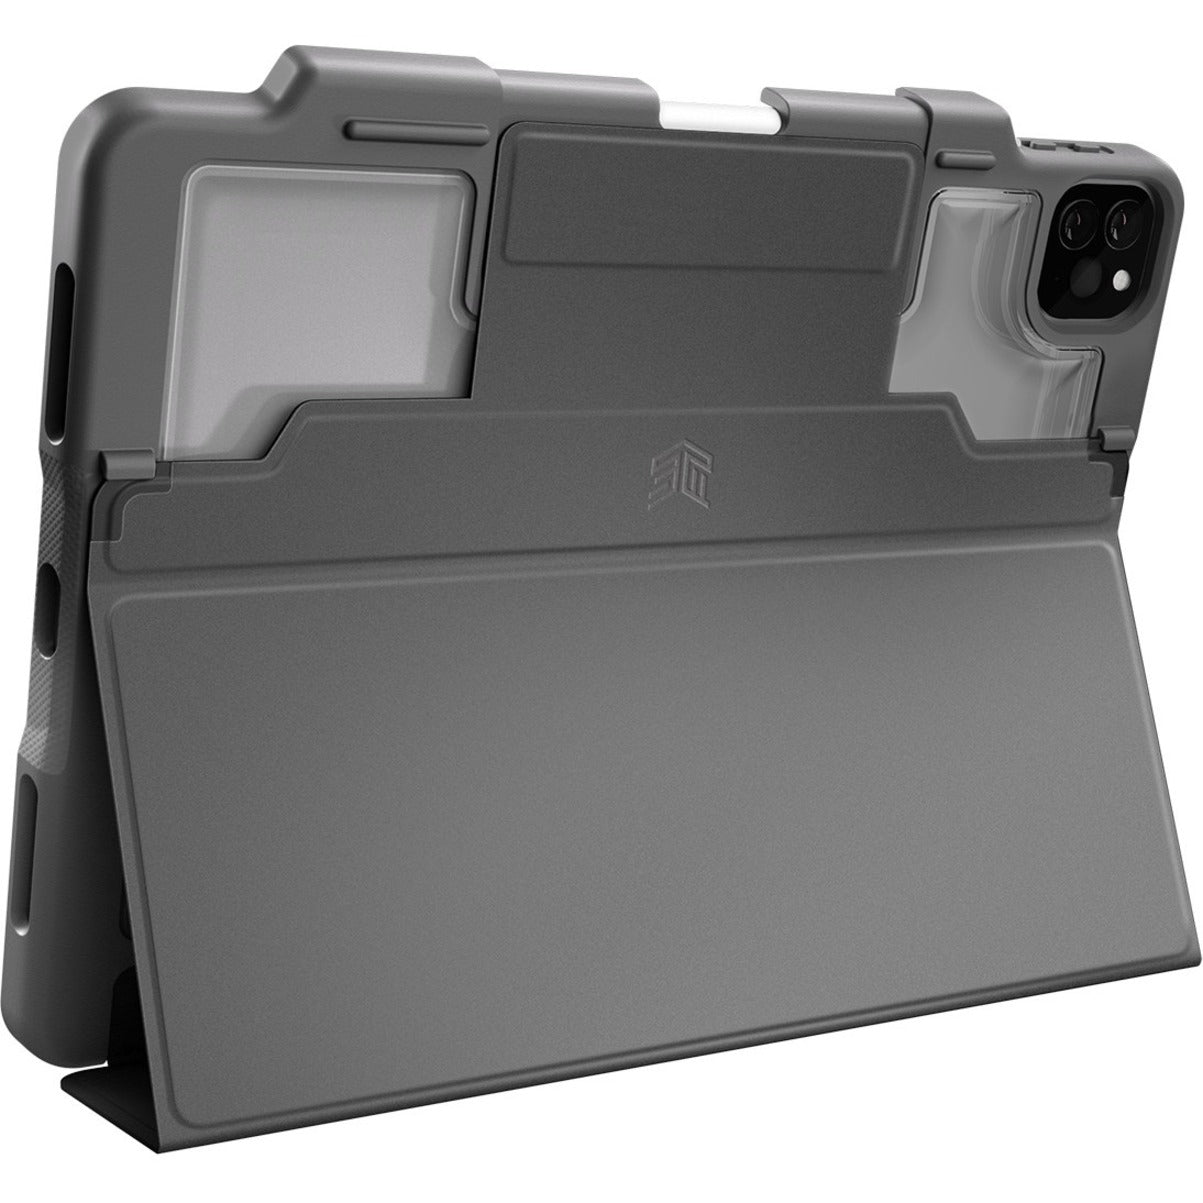 STM Goods STM-222-334LZ-01 DUX PLUS iPad Pro Models With Apple Pencil Storage (2021), Black, Drop Resistant, 12.9"